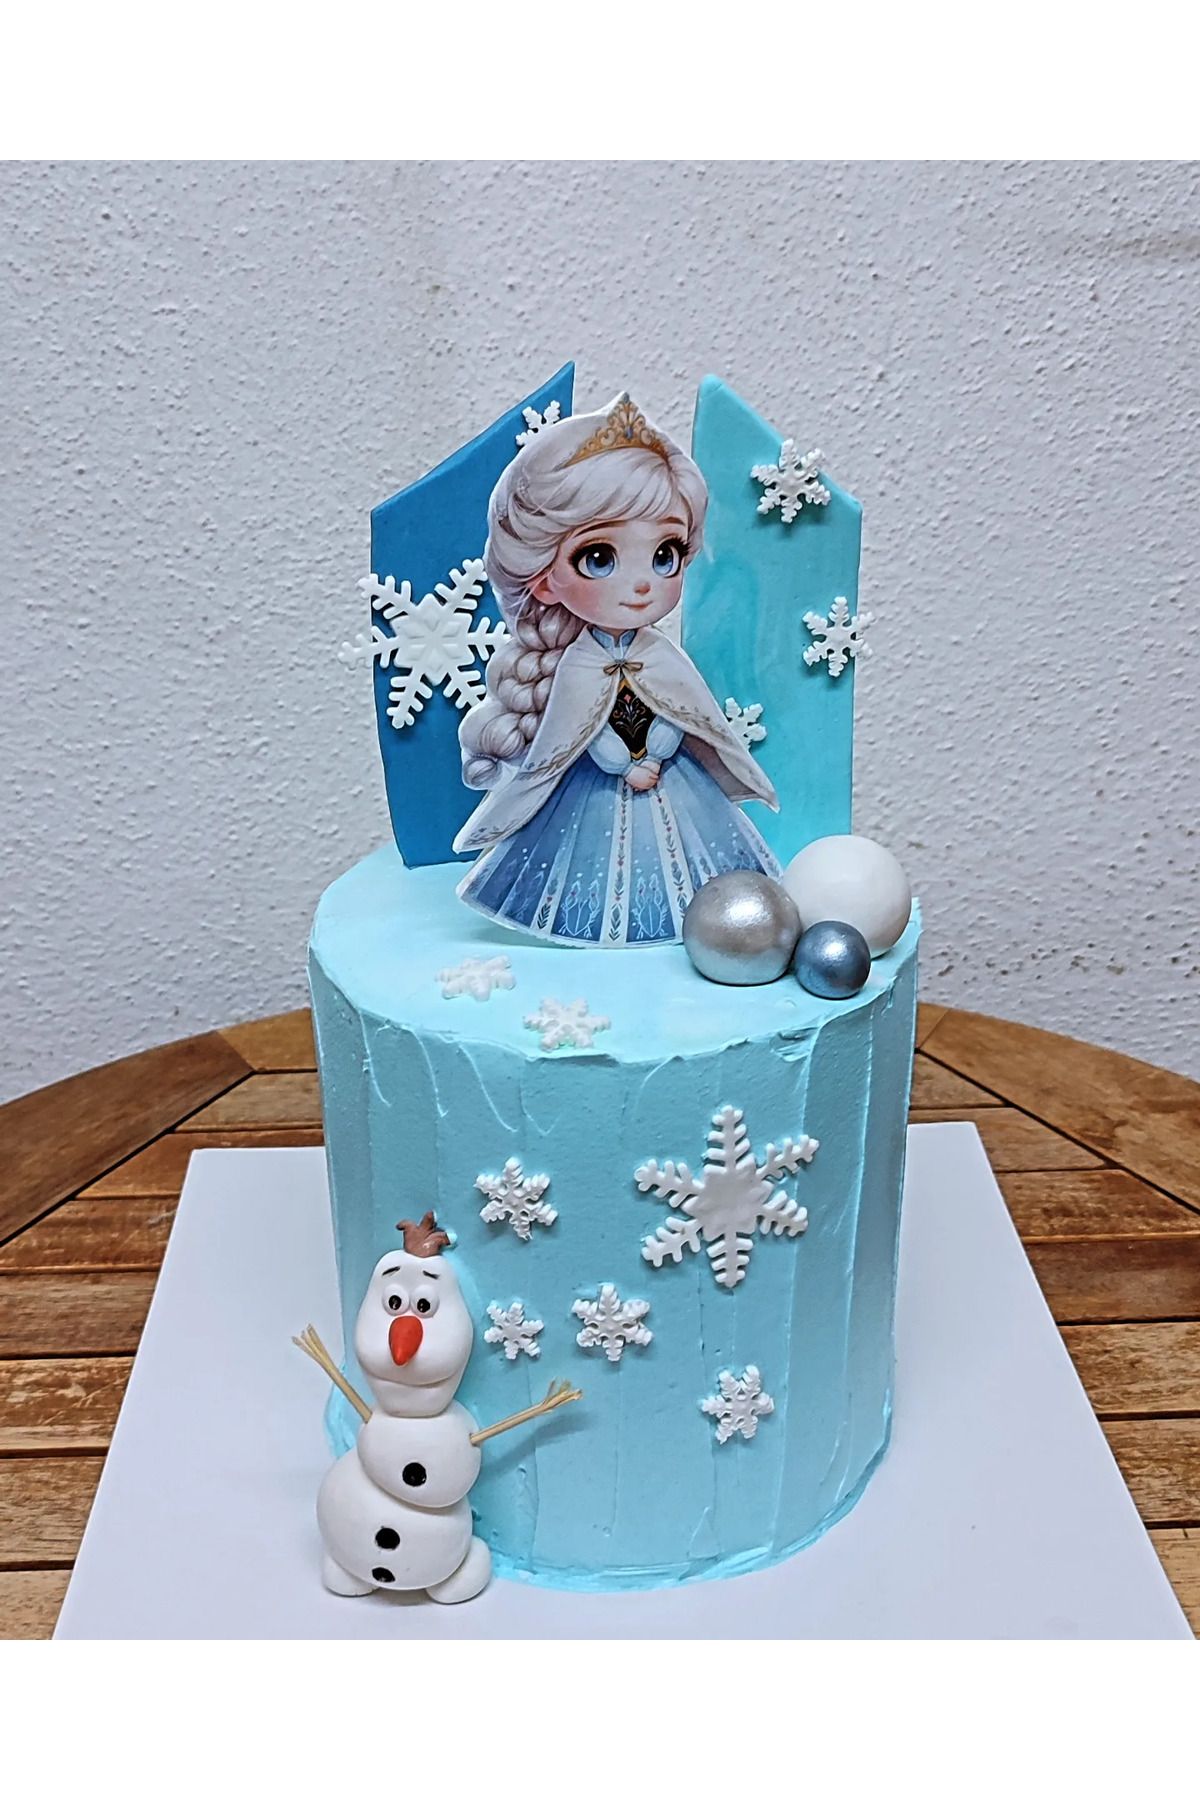 by şeyda palancı Yenilebilir baskı Elsa, şeker hamurundan Olaf ve dekorlar